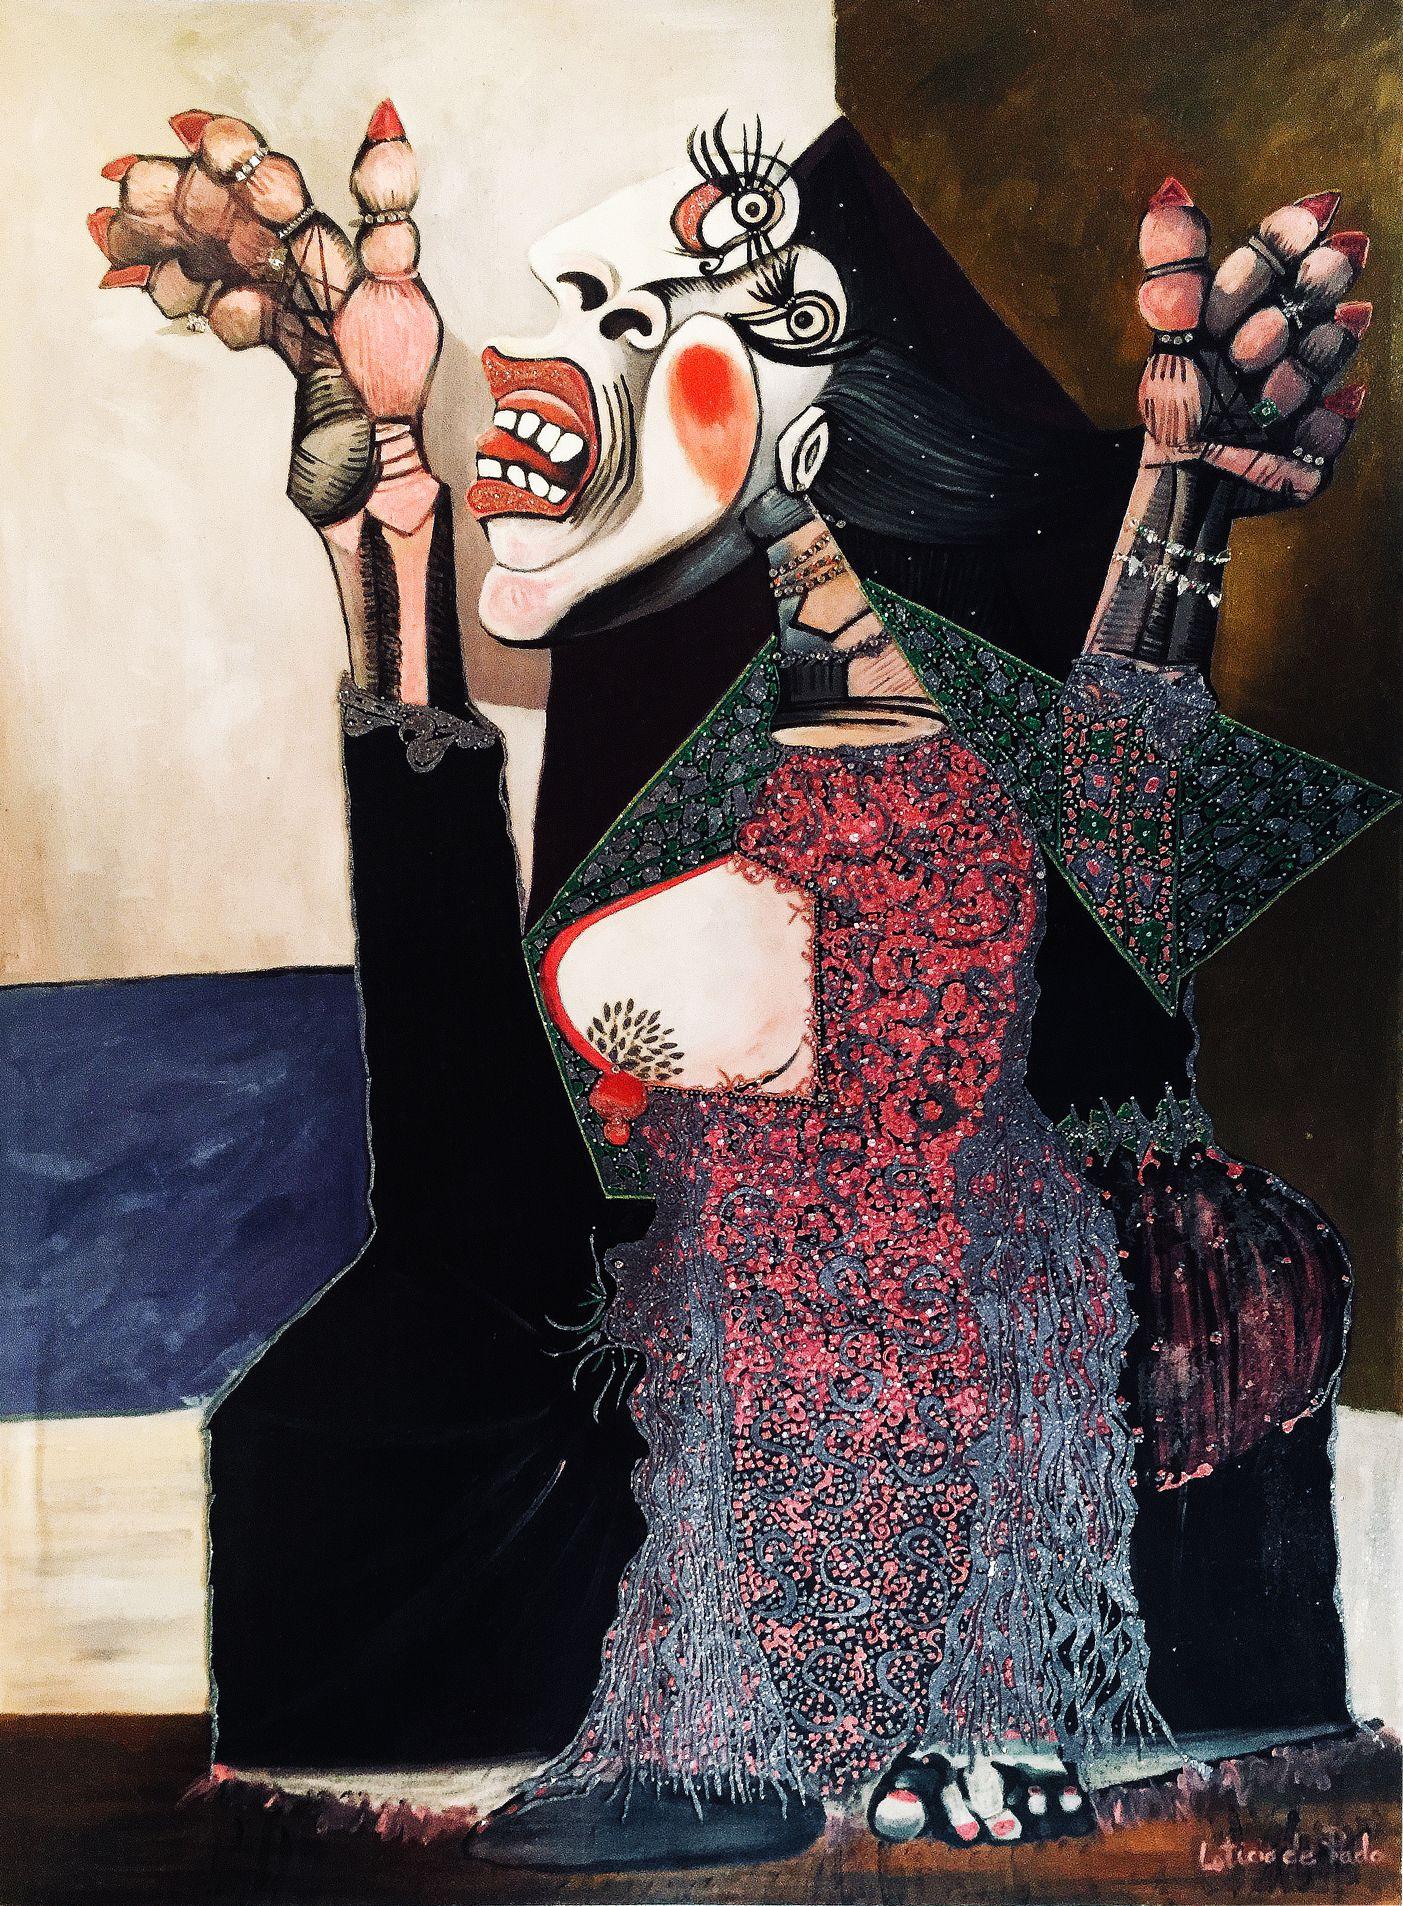 Huile sur toile infusée de strass et de soie - techniques mixtes

Leticia est une artiste espagnole qui aime créer des œuvres d'art à partir d'objets usagés et souvent mis au rebut, en leur redonnant du lustre et du glamour. Elle est surtout connue